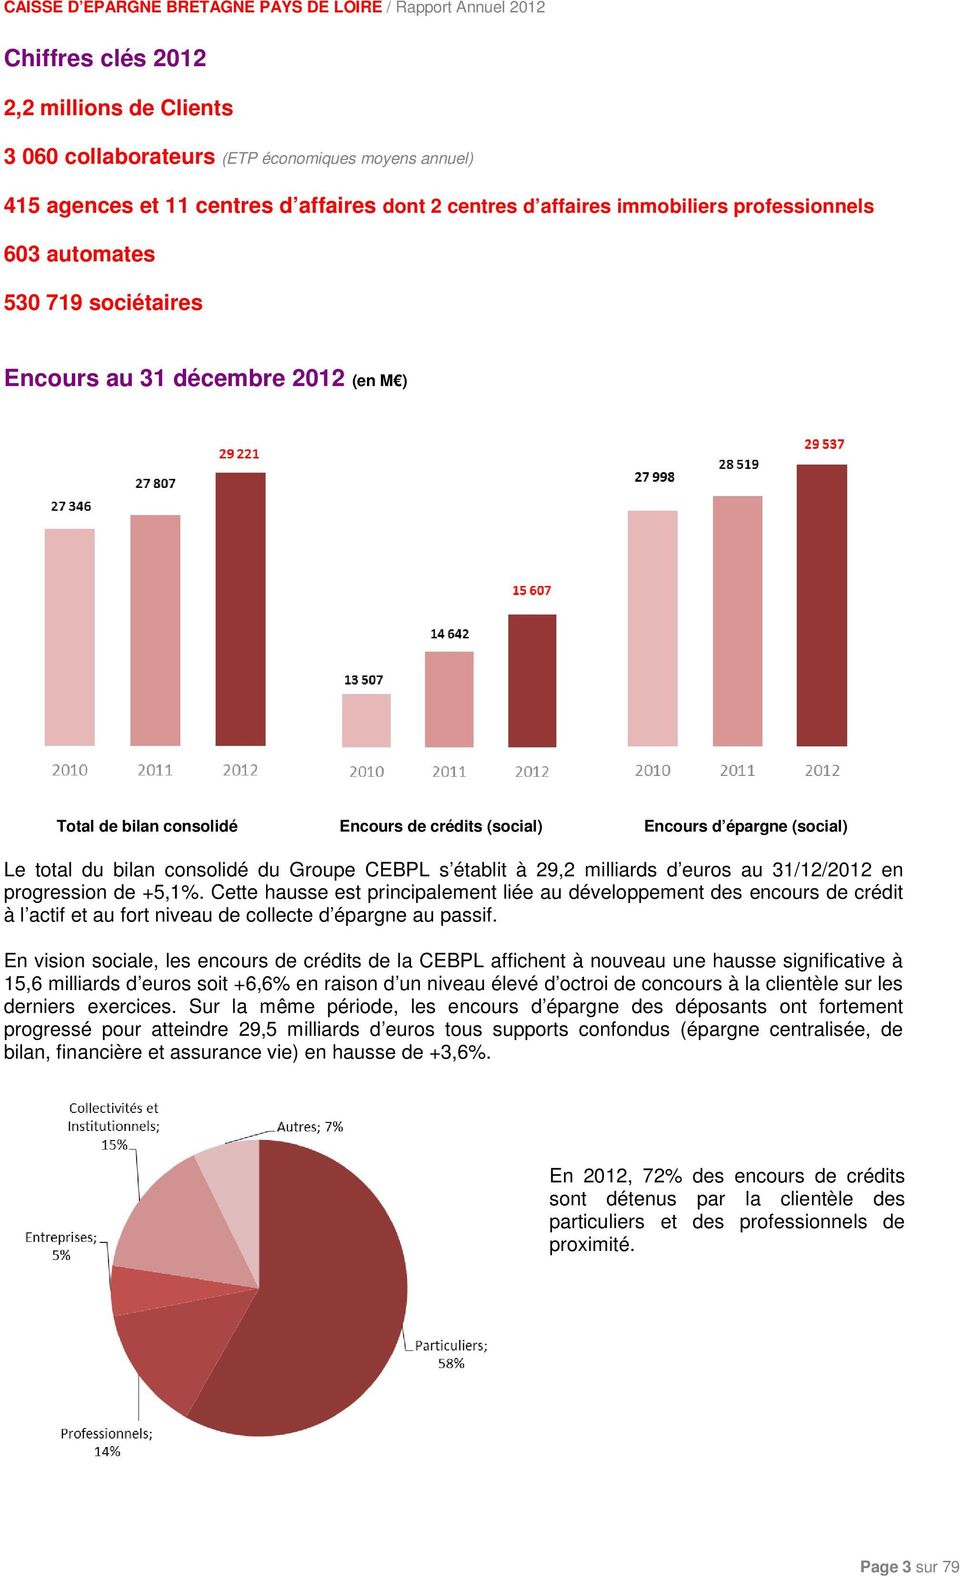 milliards d euros au 31/12/2012 en progression de +5,1%. Cette hausse est principalement liée au développement des encours de crédit à l actif et au fort niveau de collecte d épargne au passif.